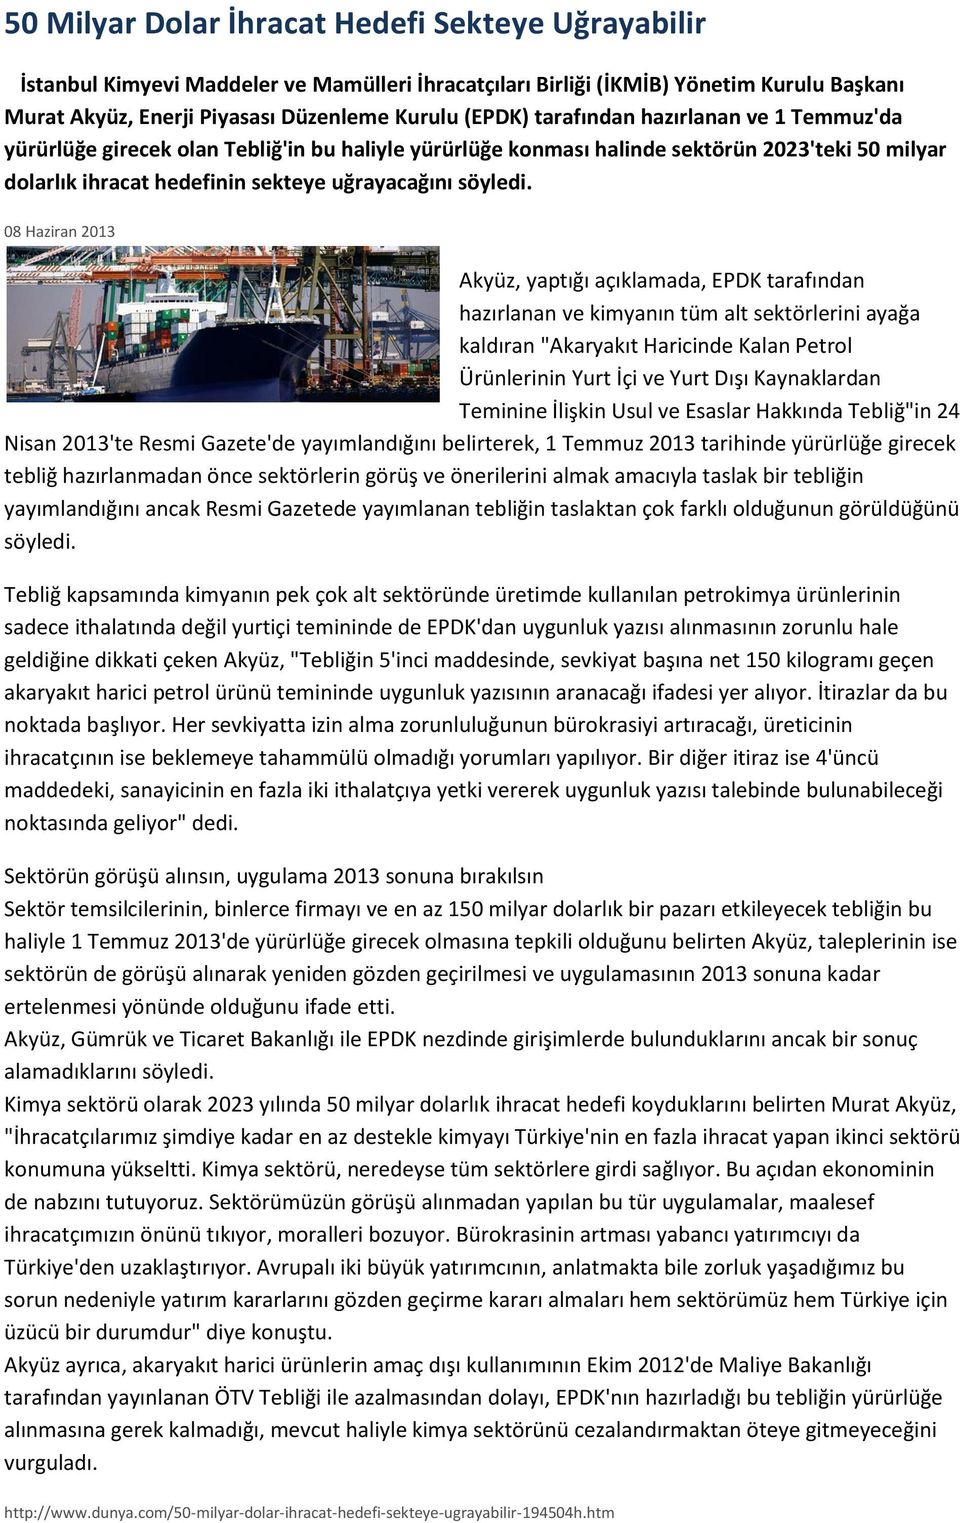 08 Haziran 2013 Akyüz, yaptığı açıklamada, EPDK tarafından hazırlanan ve kimyanın tüm alt sektörlerini ayağa kaldıran "Akaryakıt Haricinde Kalan Petrol Ürünlerinin Yurt İçi ve Yurt Dışı Kaynaklardan